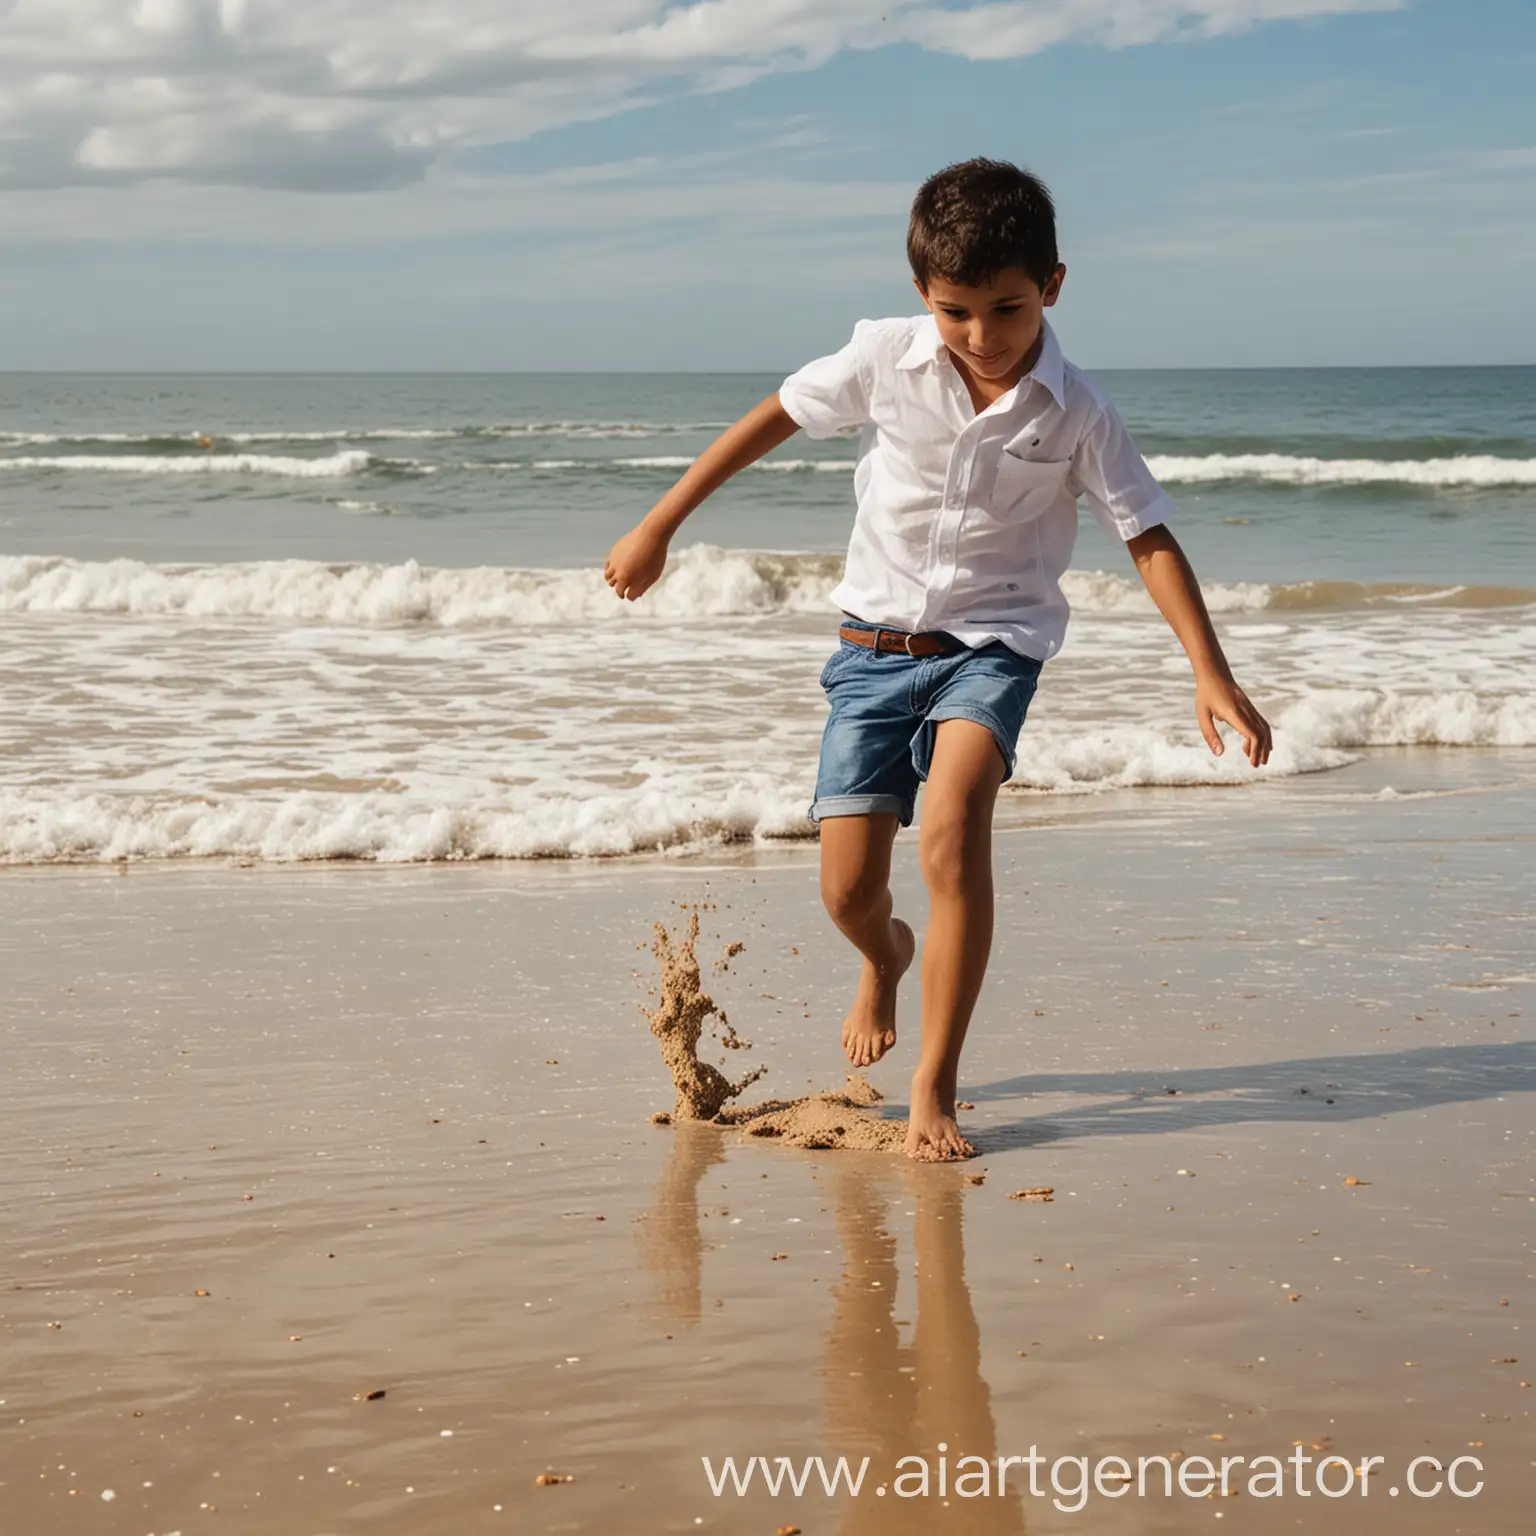 бразильский мальчик одетый в рубашку пинает ногой песок на бразильском пляже